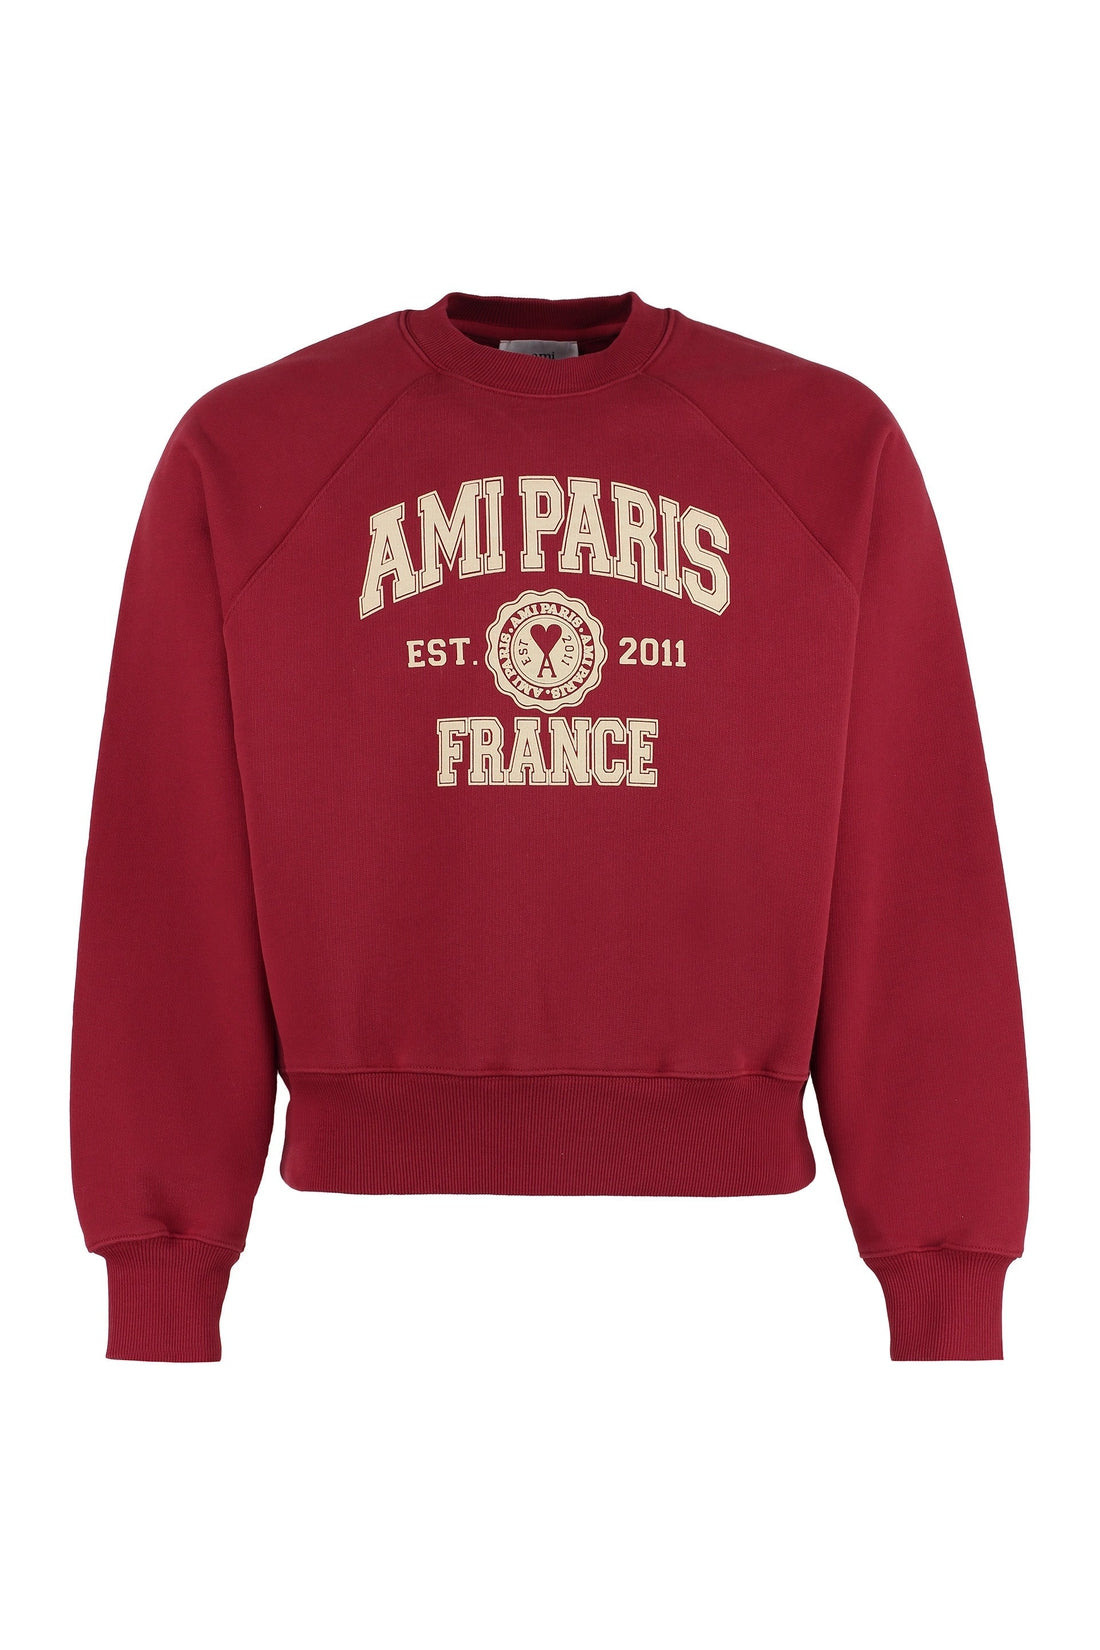 AMI PARIS-OUTLET-SALE-Printed crew-neck sweatshirt-ARCHIVIST